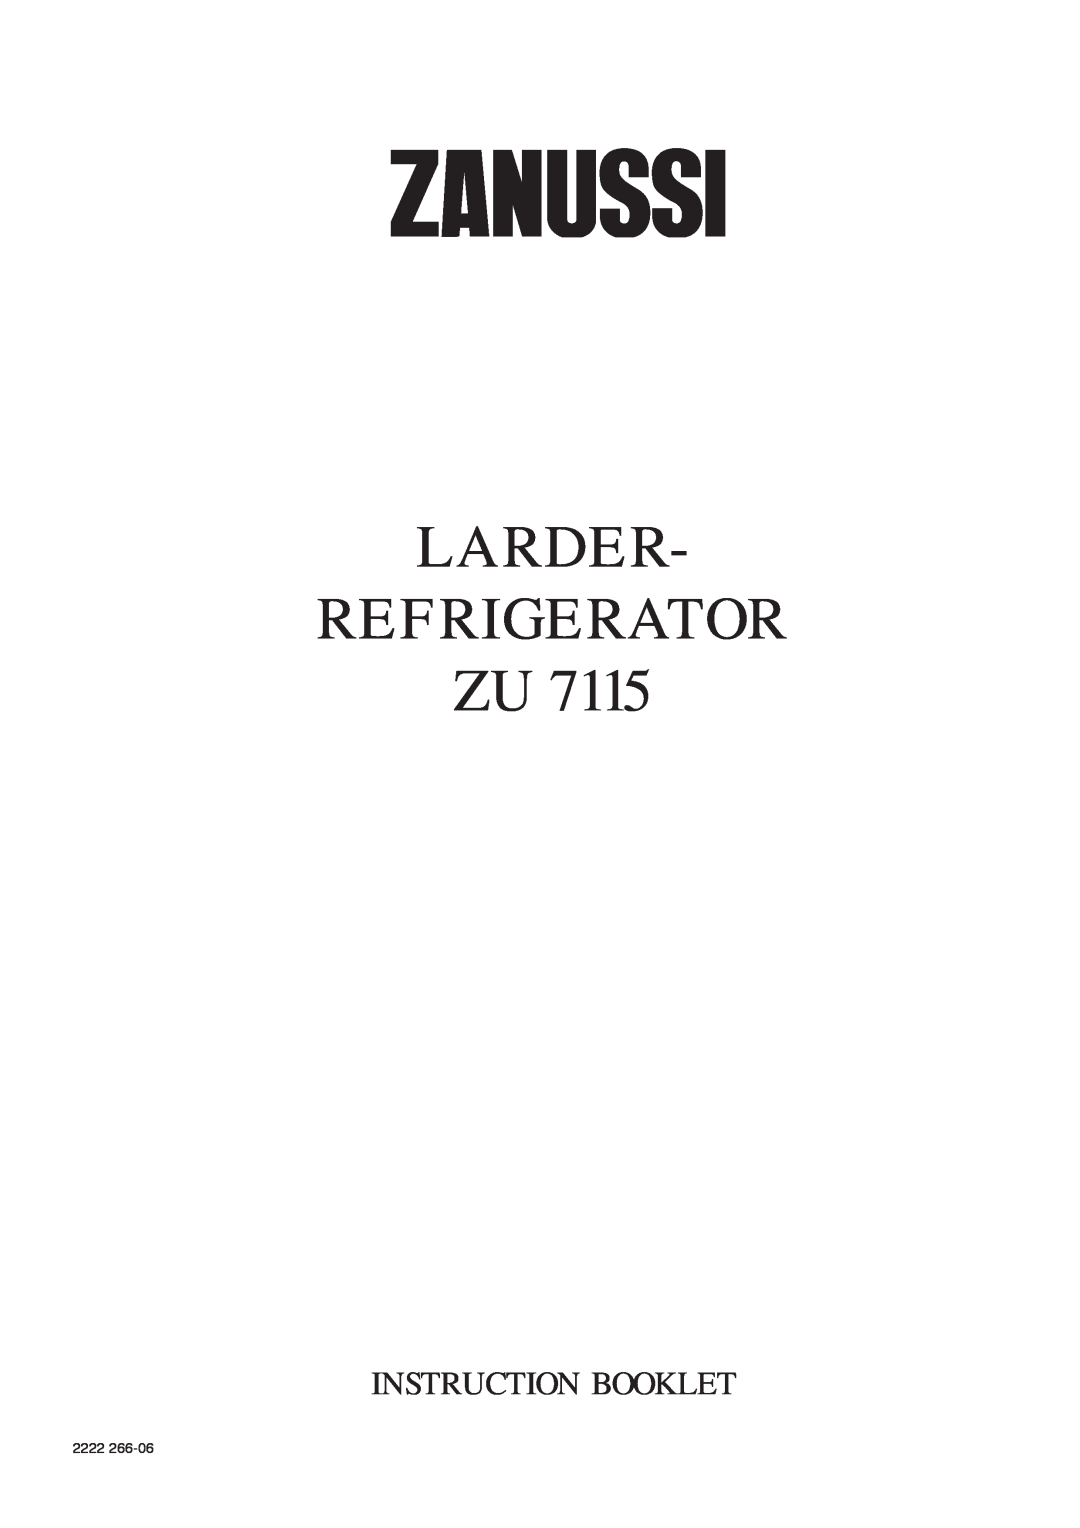 Zanussi ZU 7115 manual Larder Refrigerator Zu, Instruction Booklet, 2222 